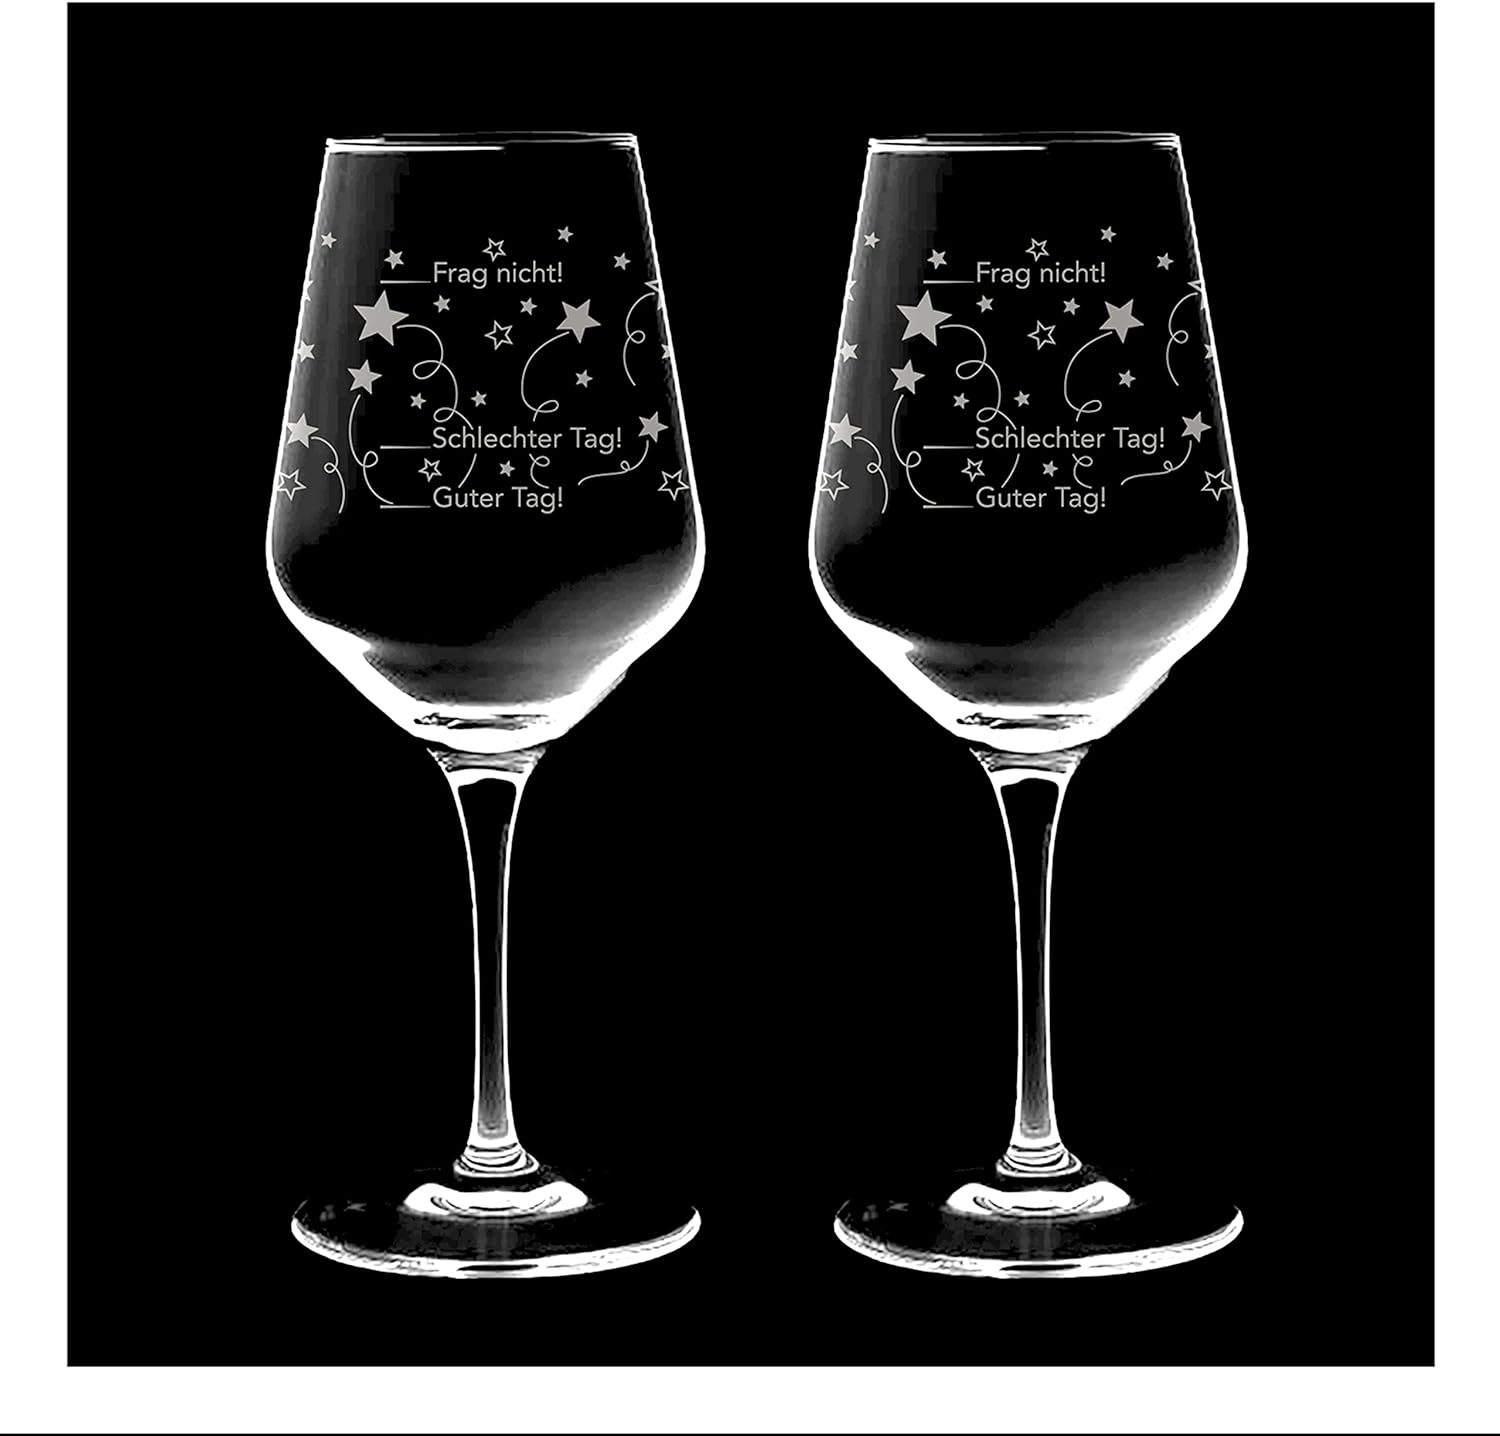 Kristall-Weinglas-550ml-Guter-Tag/Schlechter-Tag-inklusive-Geschenkbox-berlindeluxe-weinglas-fragnicht-dunkler-hintergrund